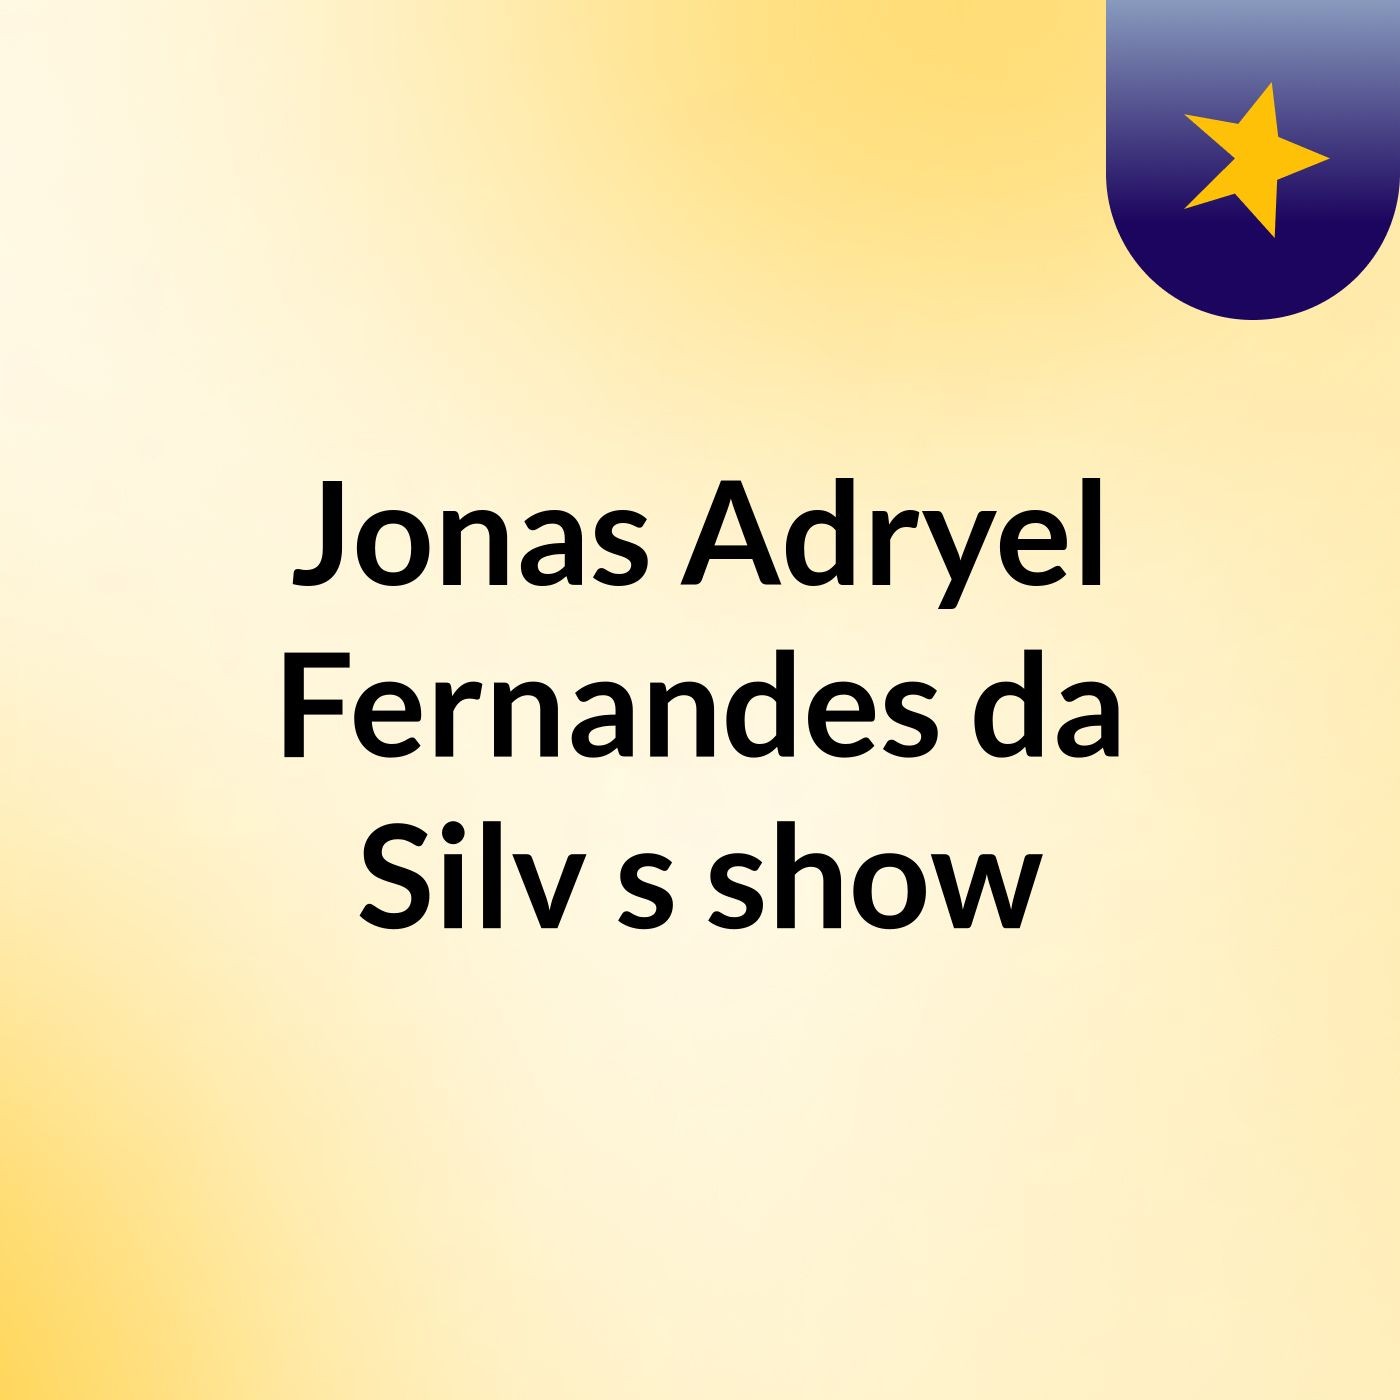 Jonas Adryel Fernandes da Silv's show